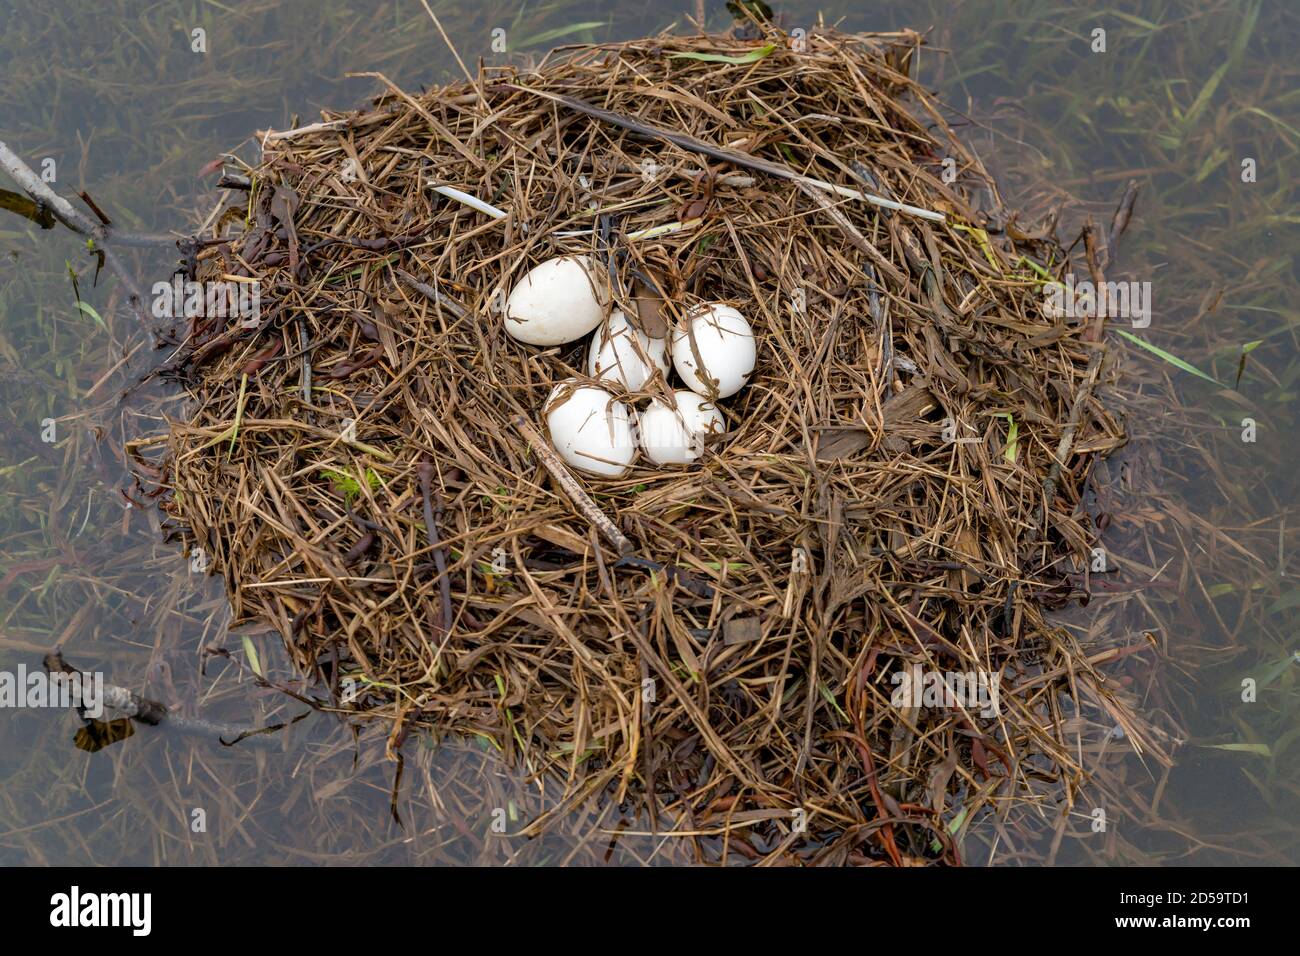 Un grande nido d'oca del Canada con cinque uova in esso. Il nido è in acqua. L'oca non è presente. Giorno leggermente scuro. Foto Stock